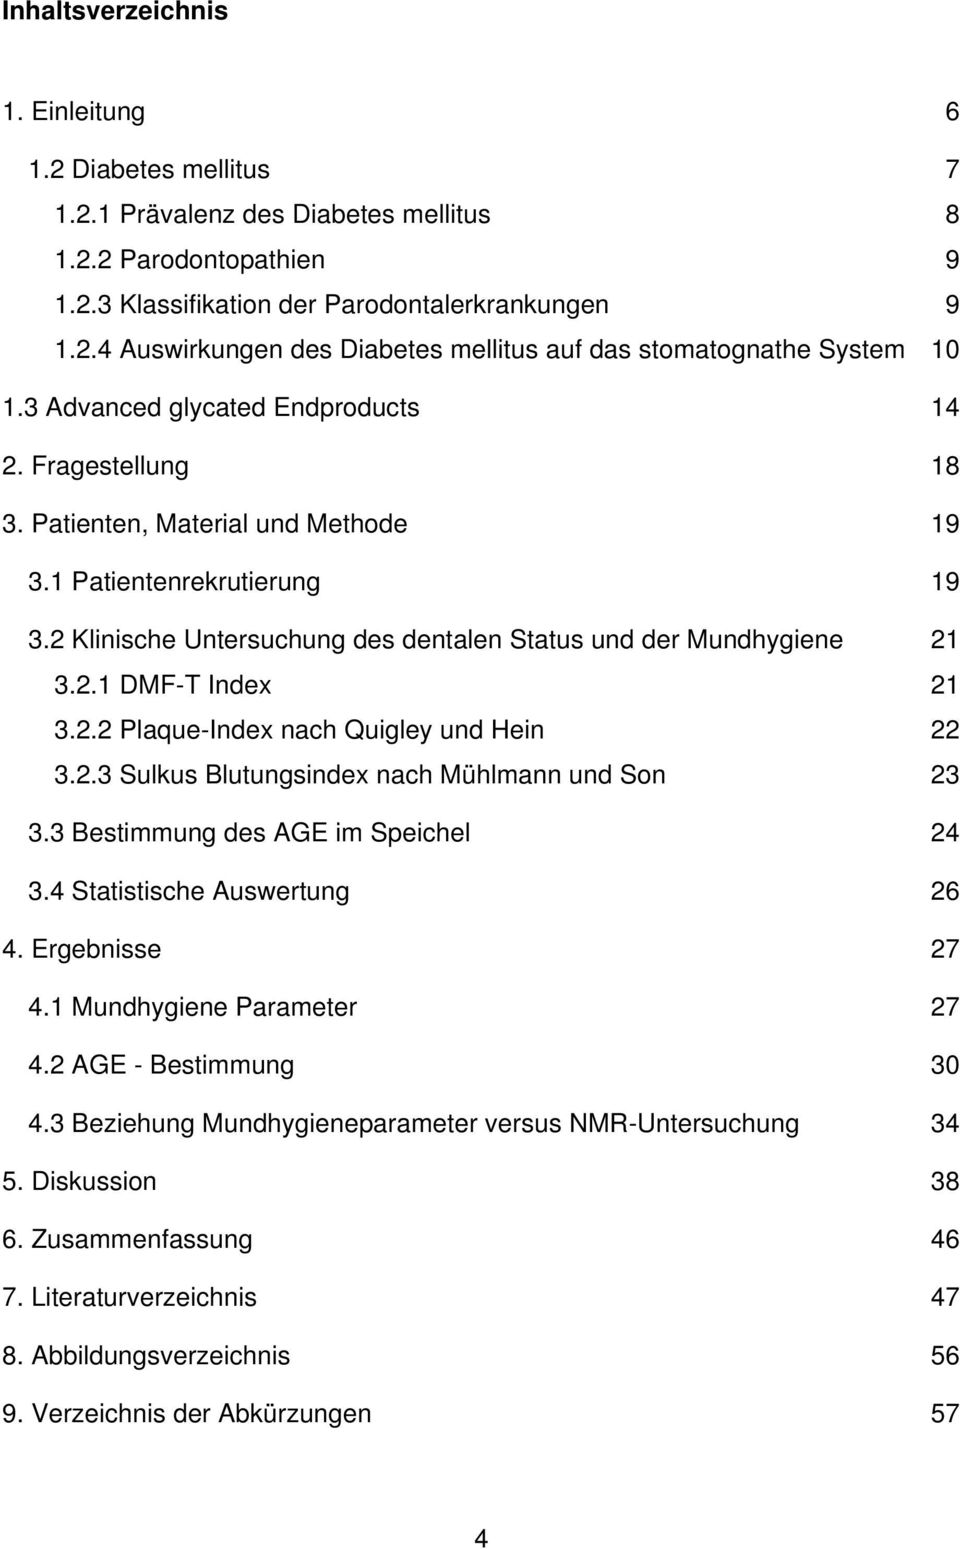 2.2 Plaque-Index nach Quigley und Hein 22 3.2.3 Sulkus Blutungsindex nach Mühlmann und Son 23 3.3 Bestimmung des AGE im Speichel 24 3.4 Statistische Auswertung 26 4. Ergebnisse 27 4.